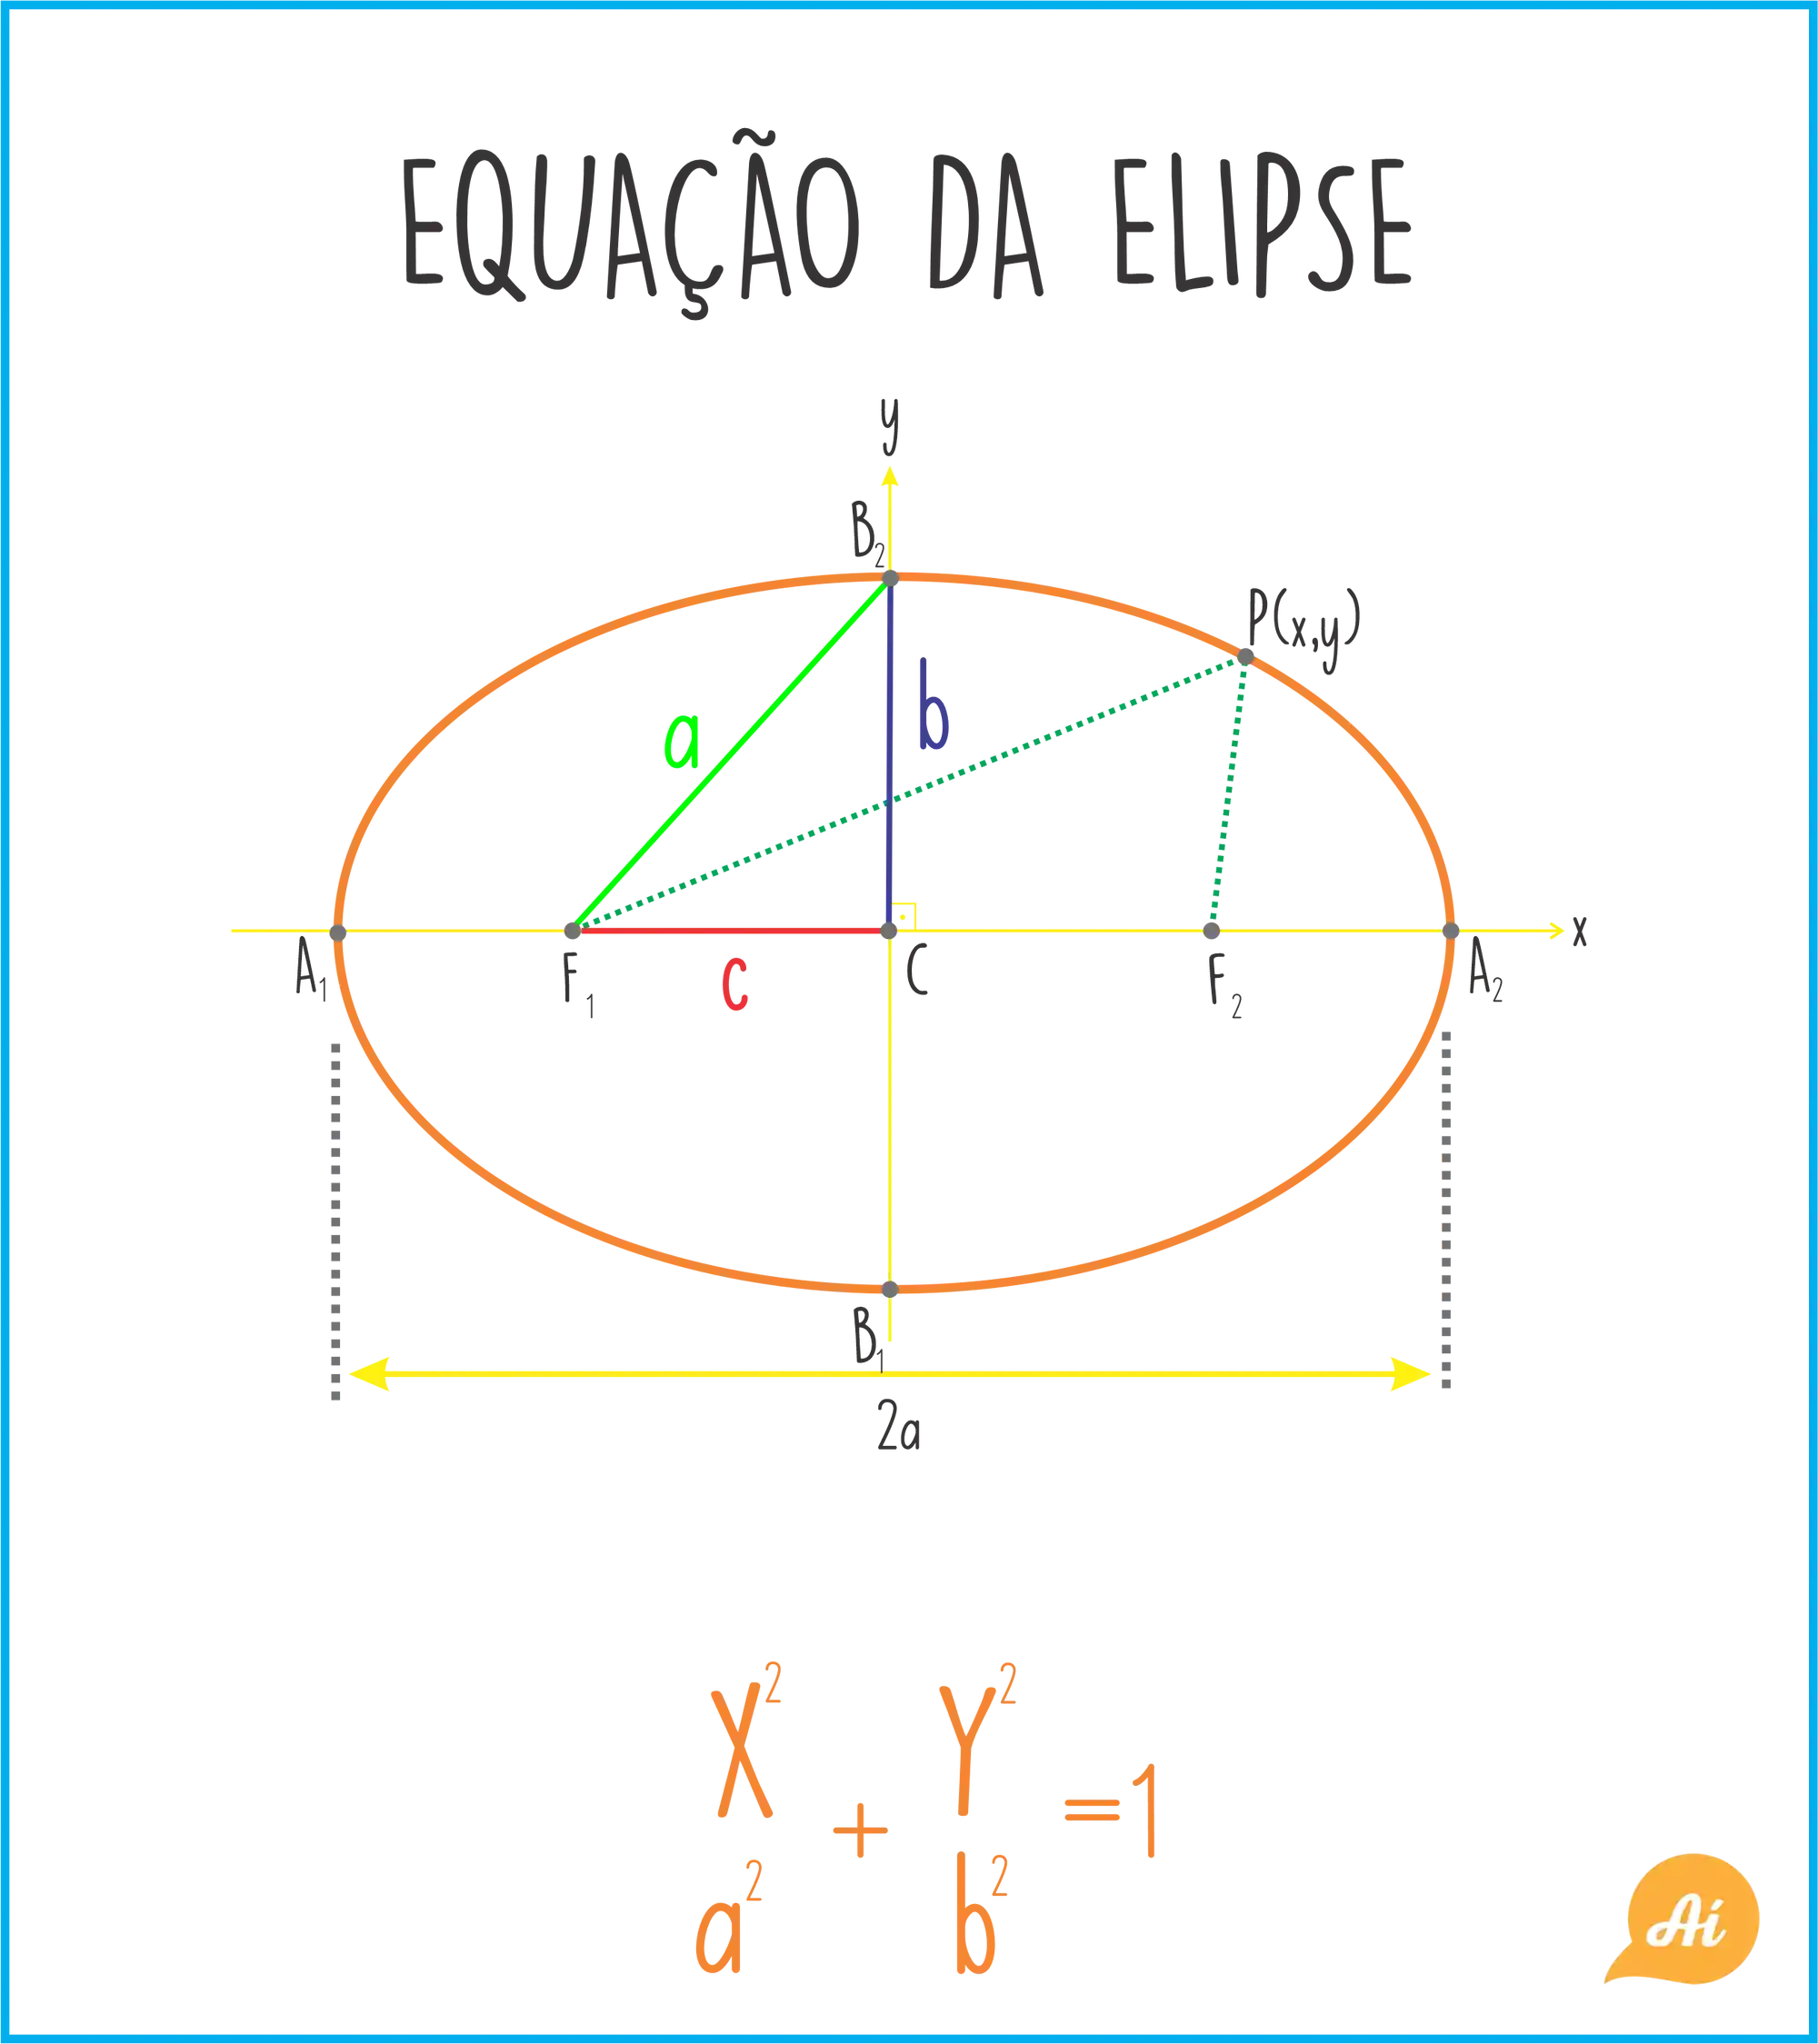 Equação da elipse